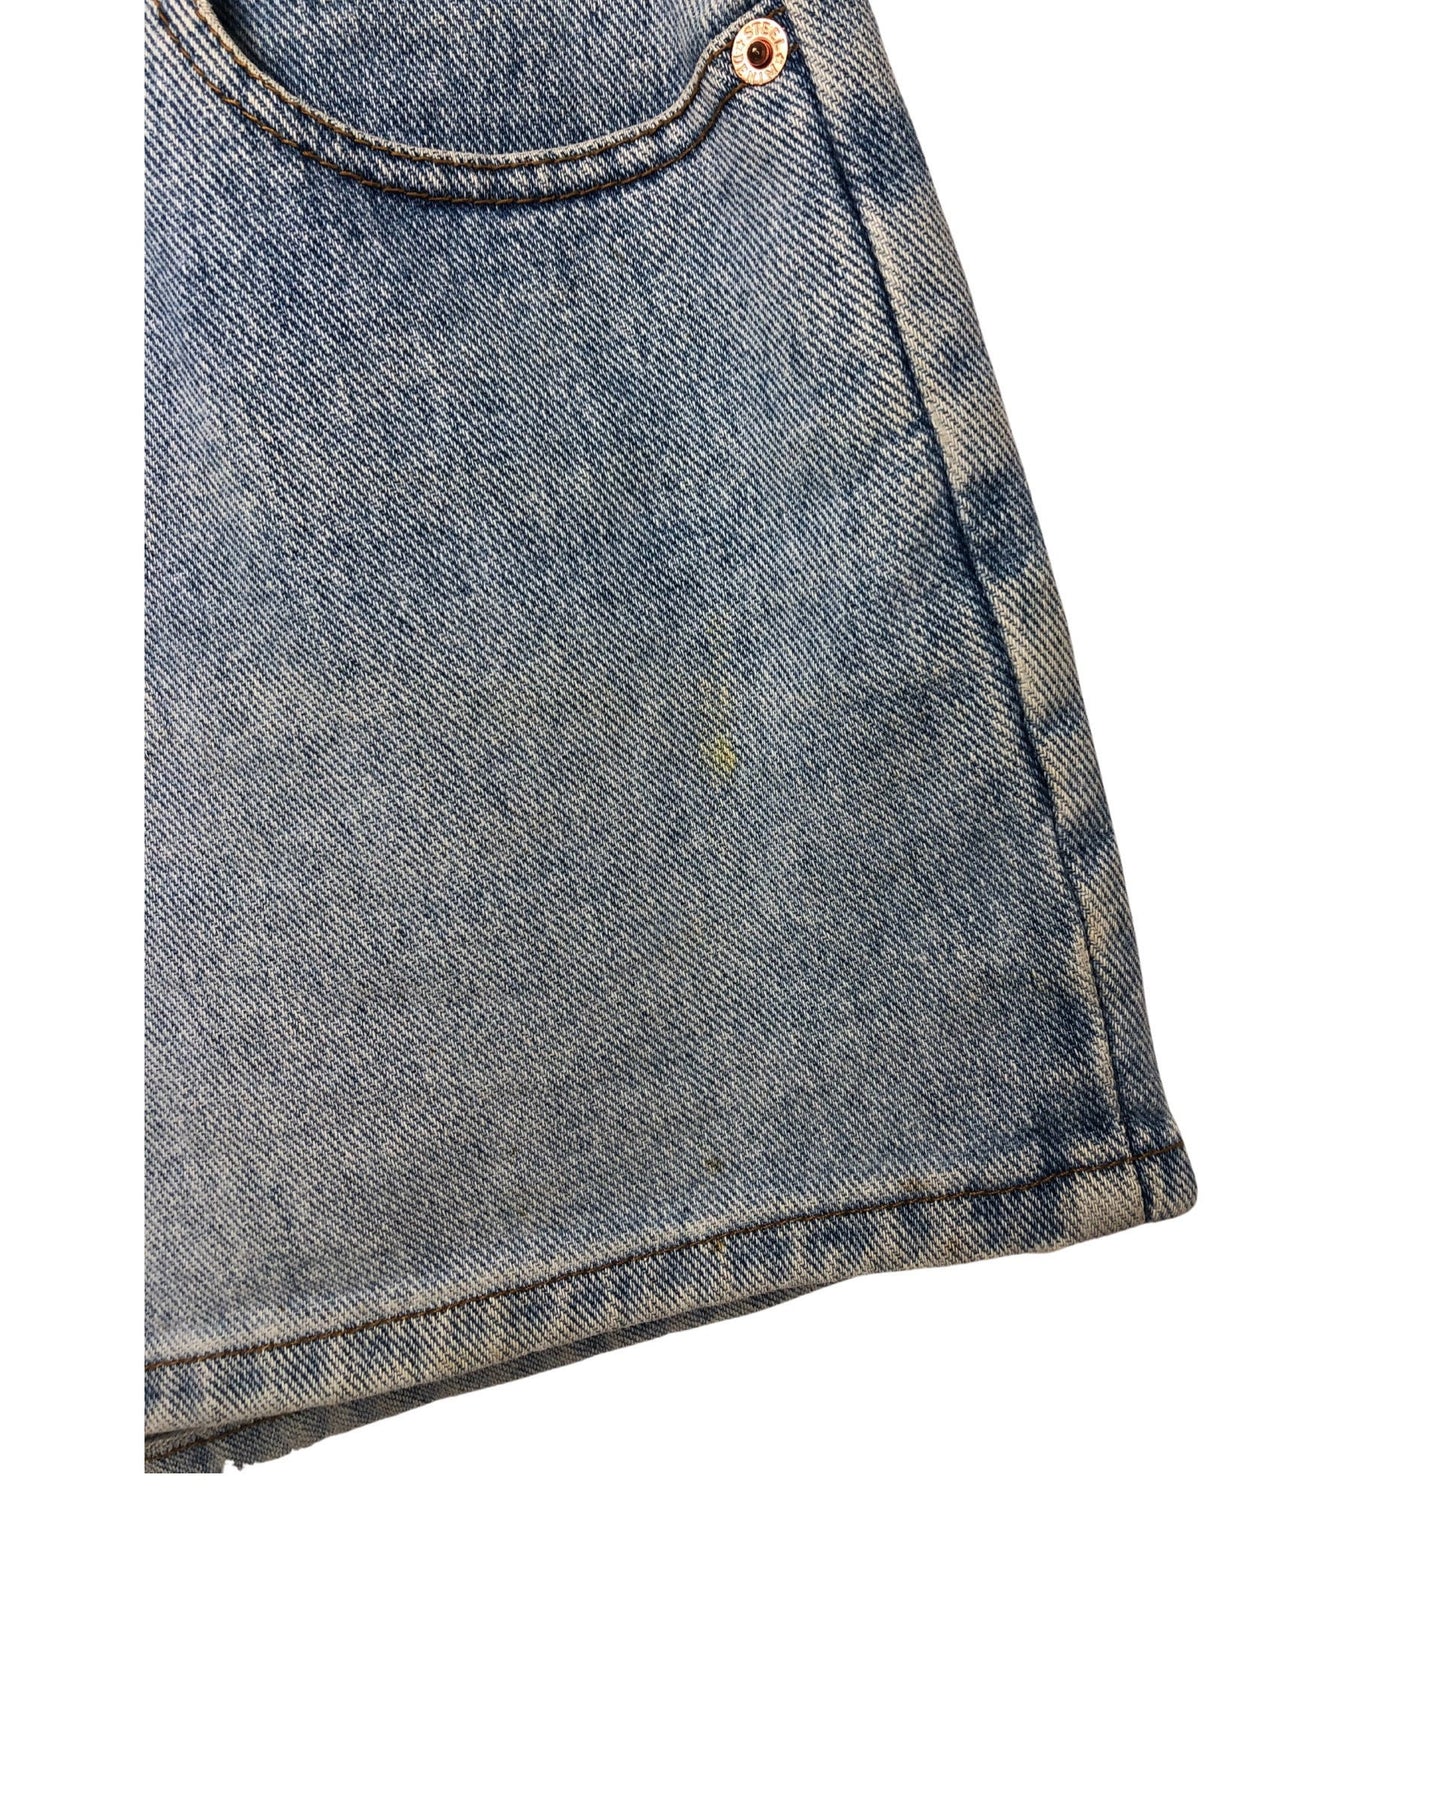 Vintage 90’s STEEL DENIM 5 Pocket 3” Short Jean Shorts Wms Size 24